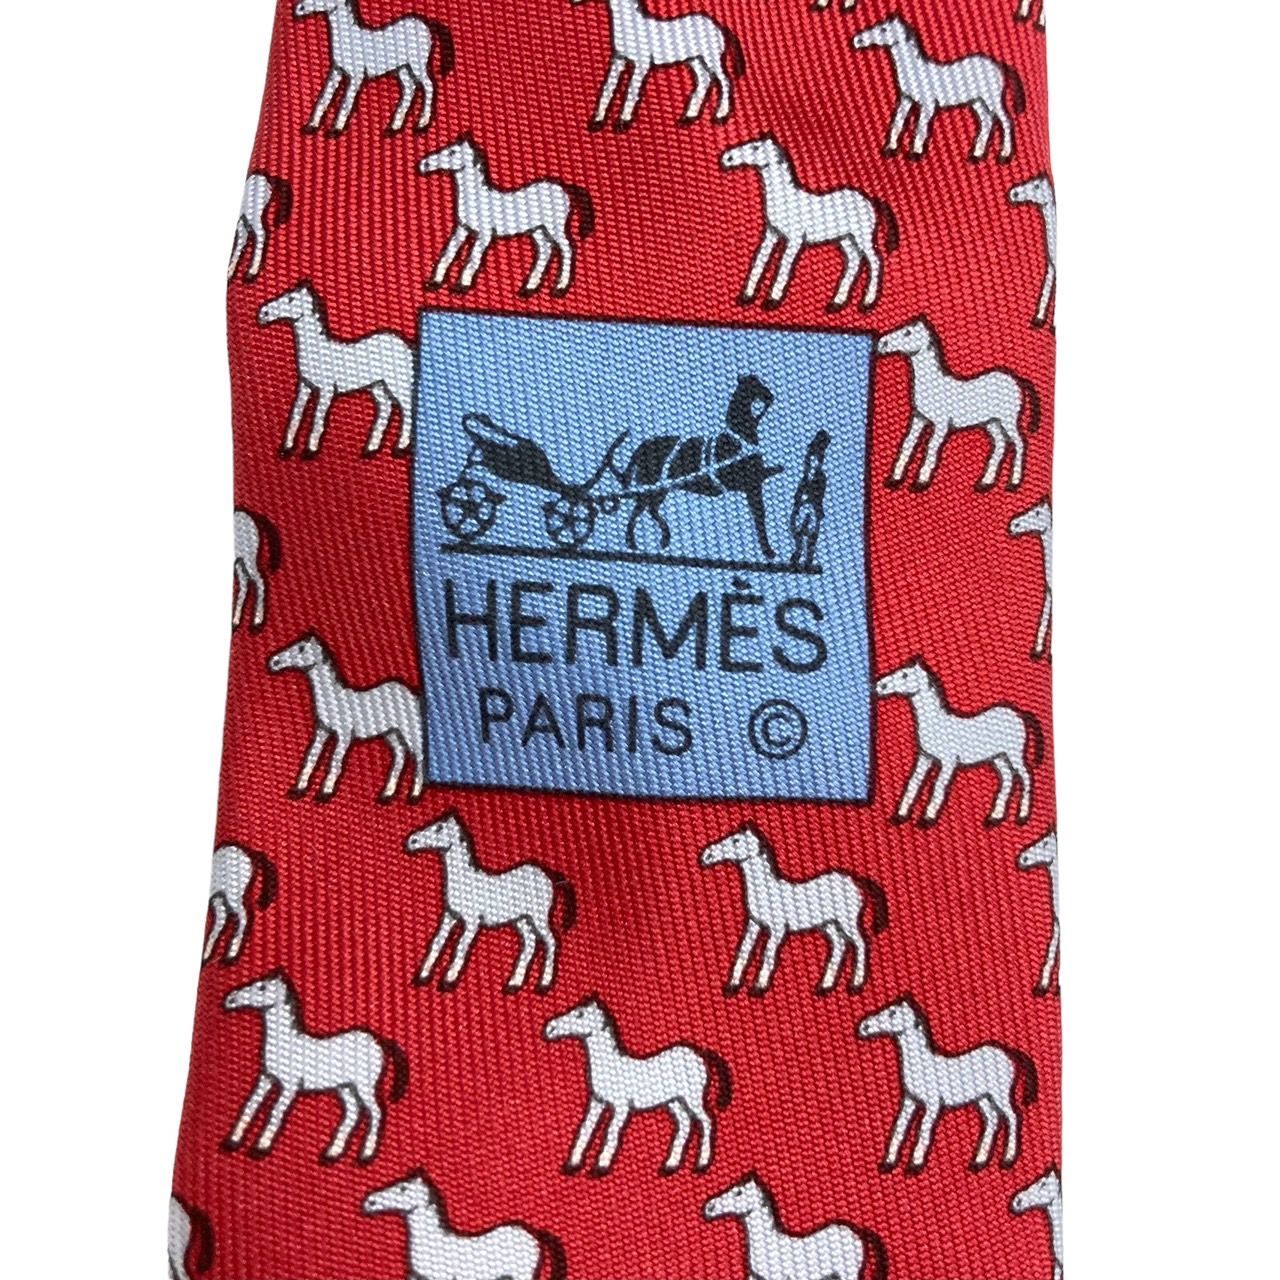 直販特価送料無料 HERMES エルメス ネクタイ シルク レッド系 折り紙風馬柄 ネクタイ